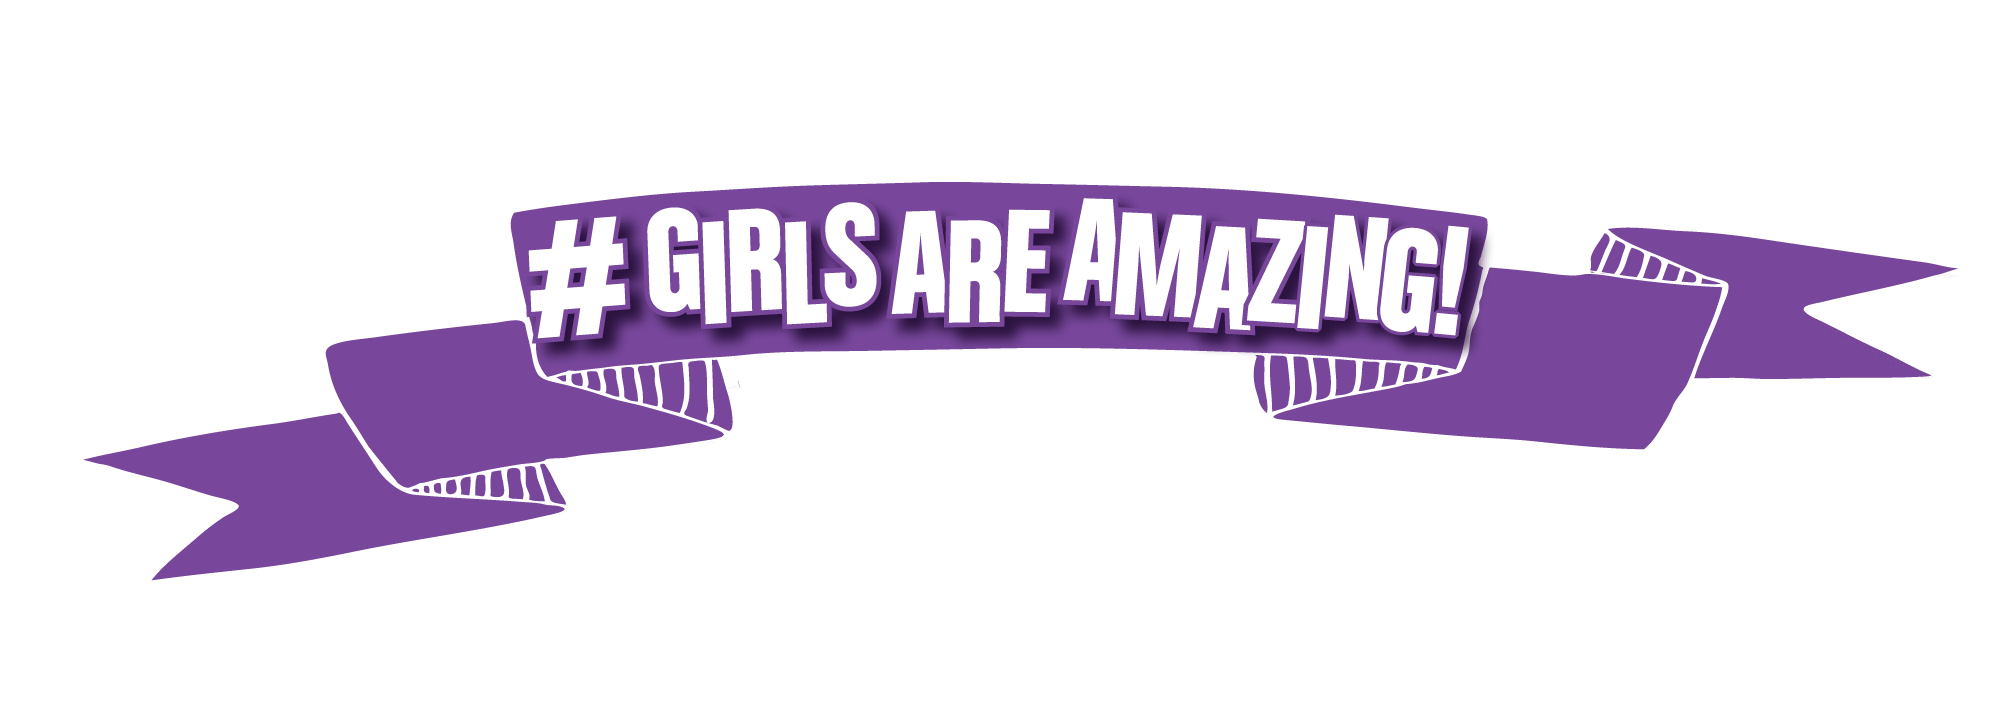 Girl-Talk-girlsamazing-banner